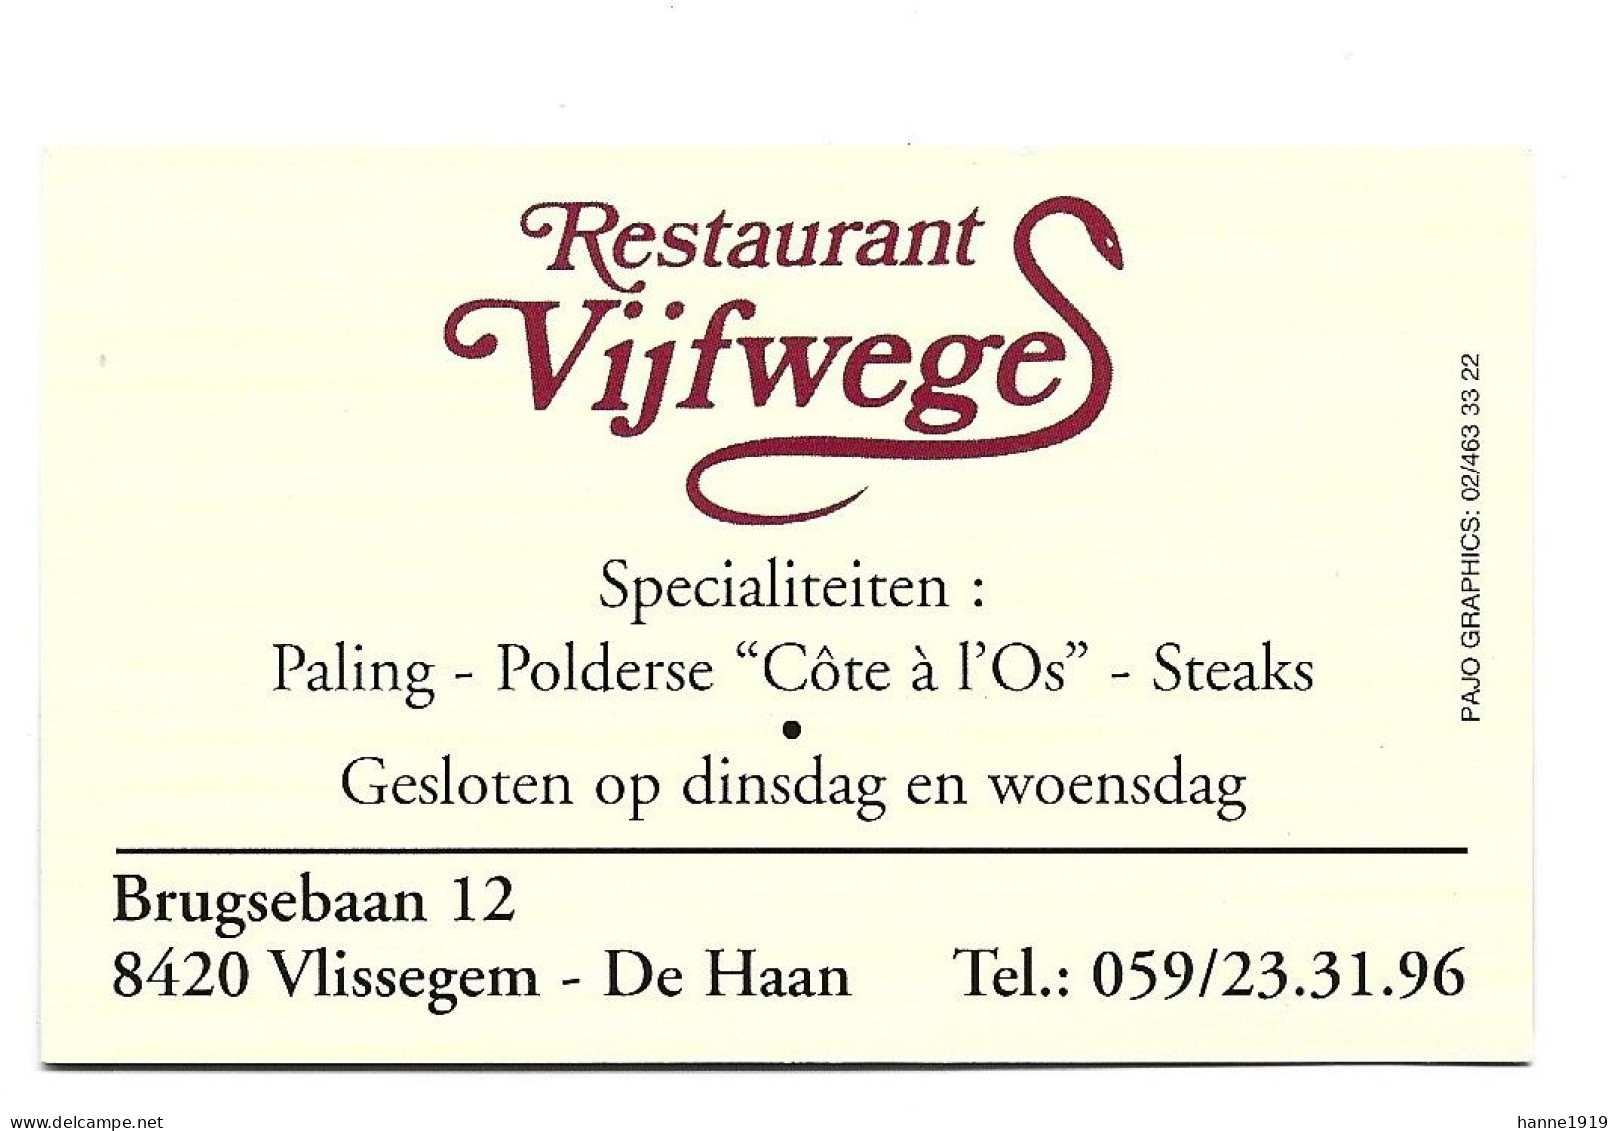 De Haan Vlissegem Brugsebaan Restaurant Vijfweges Etiquette Visitekaartje Htje - Visitenkarten